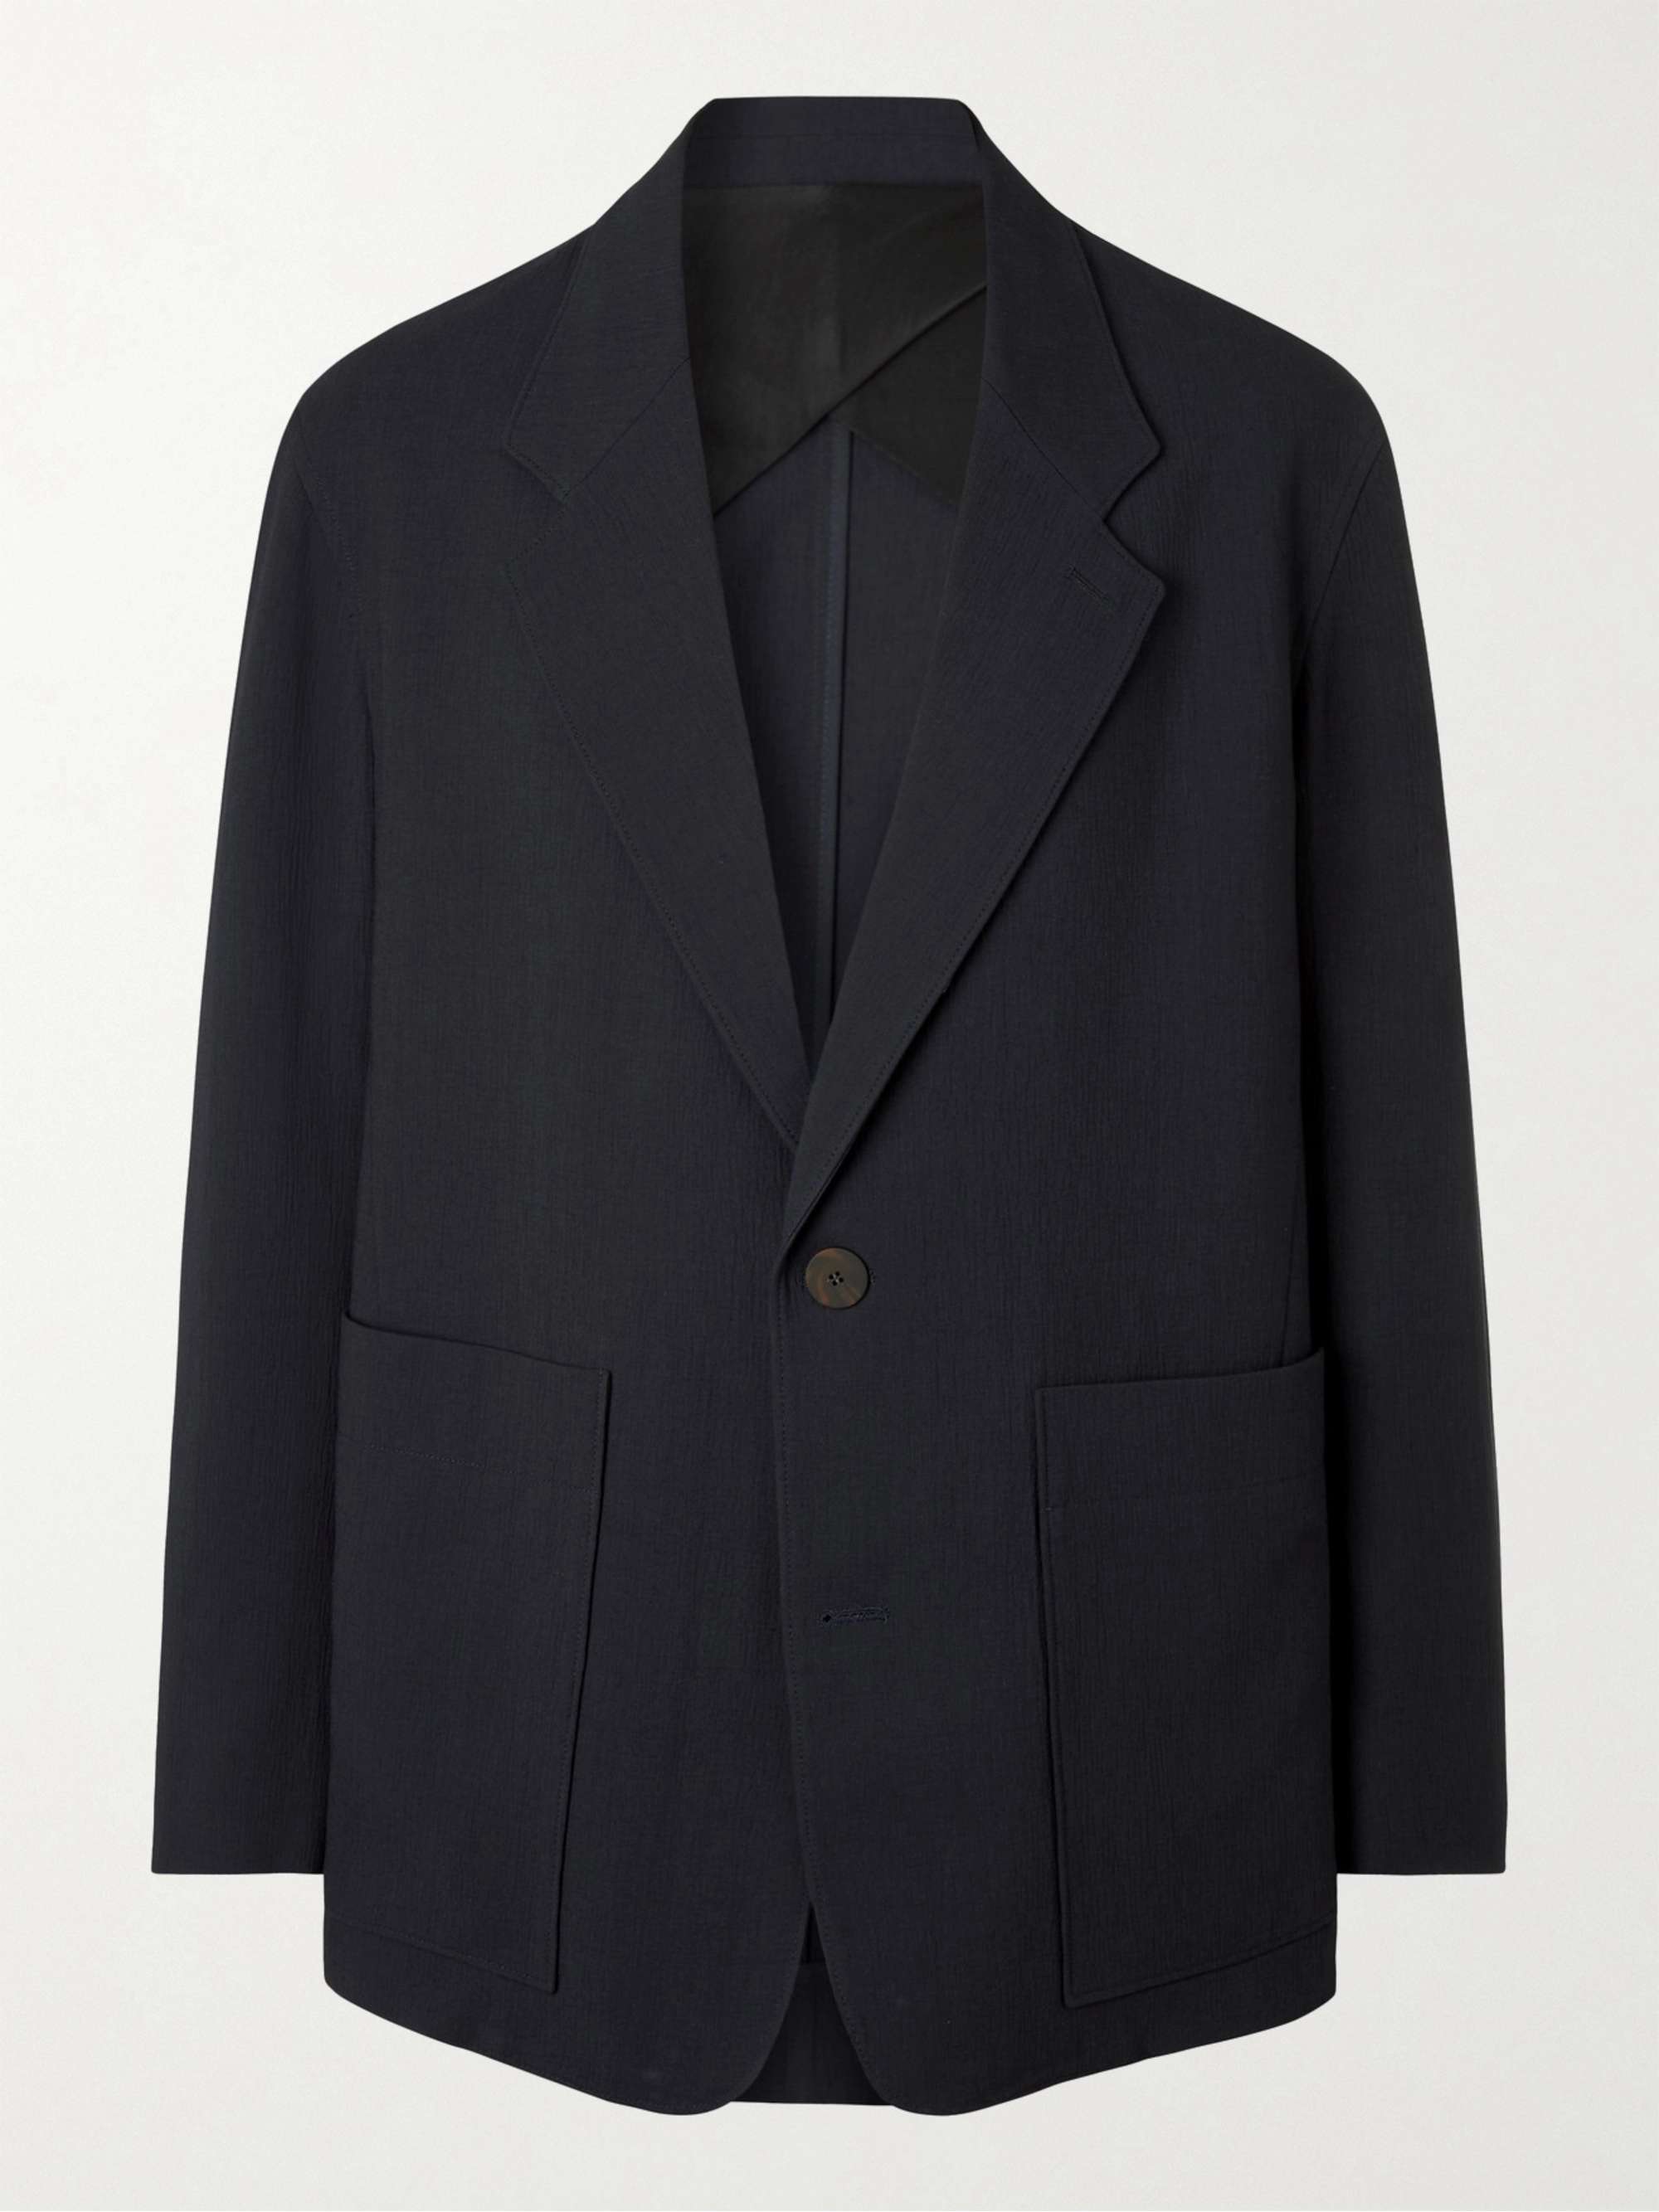 STUDIO NICHOLSON Unstructured Woven Suit Jacket for Men | MR PORTER